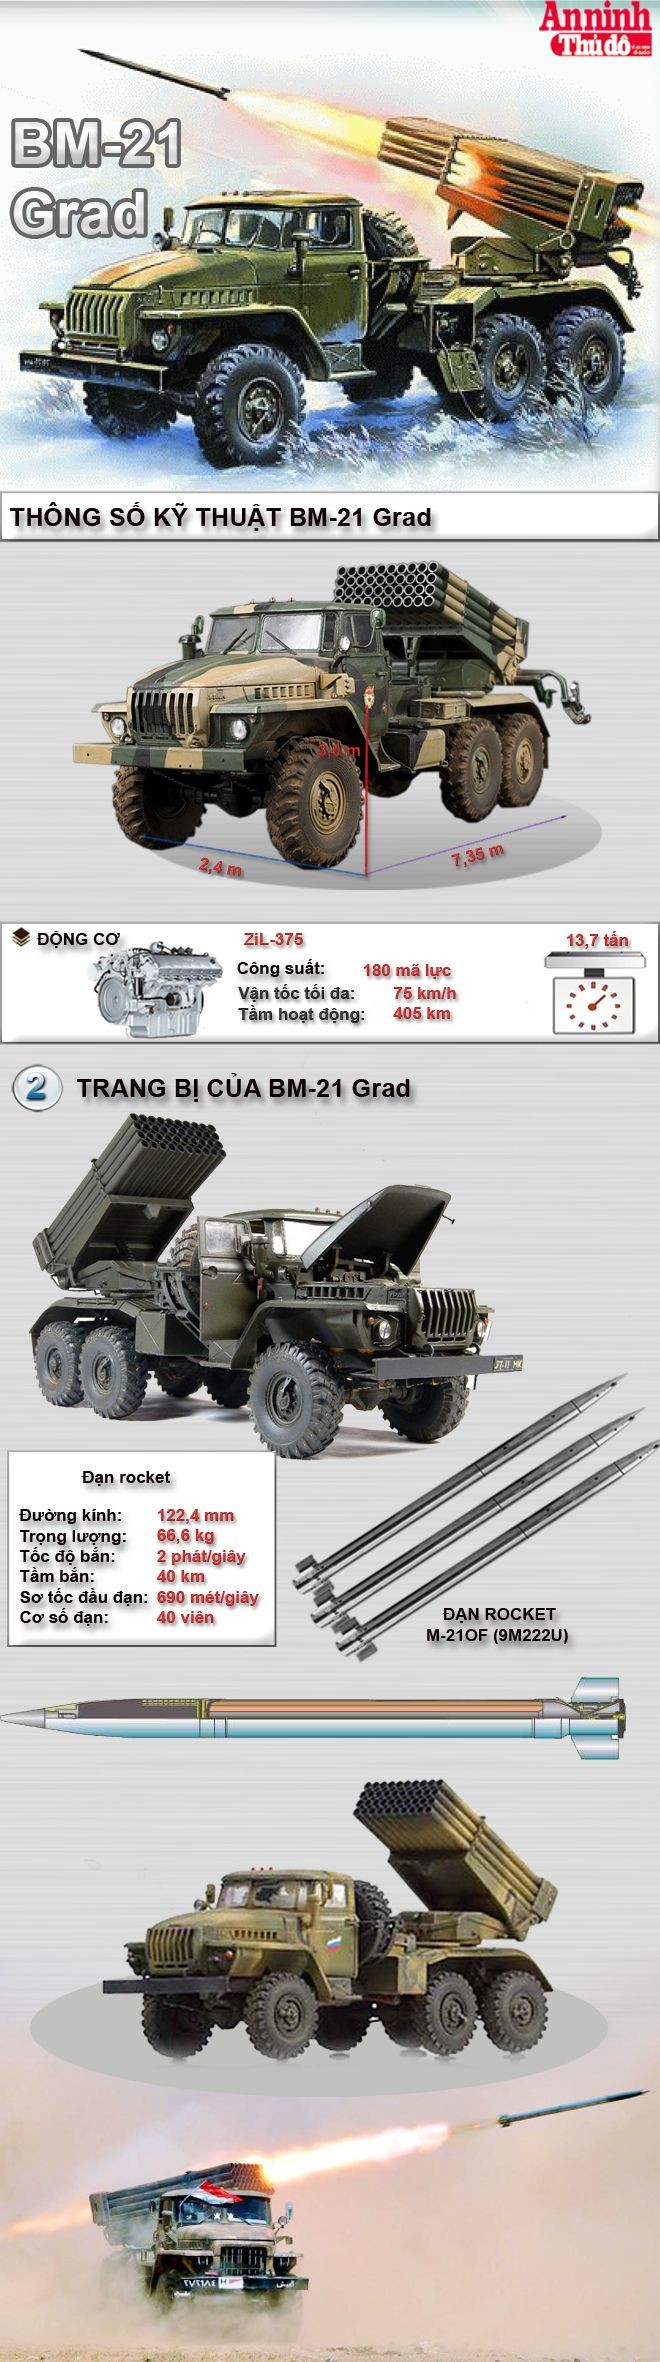 [Infographic] BM-21 Grad - Cơn bão lửa của pháo binh Việt Nam ảnh 1